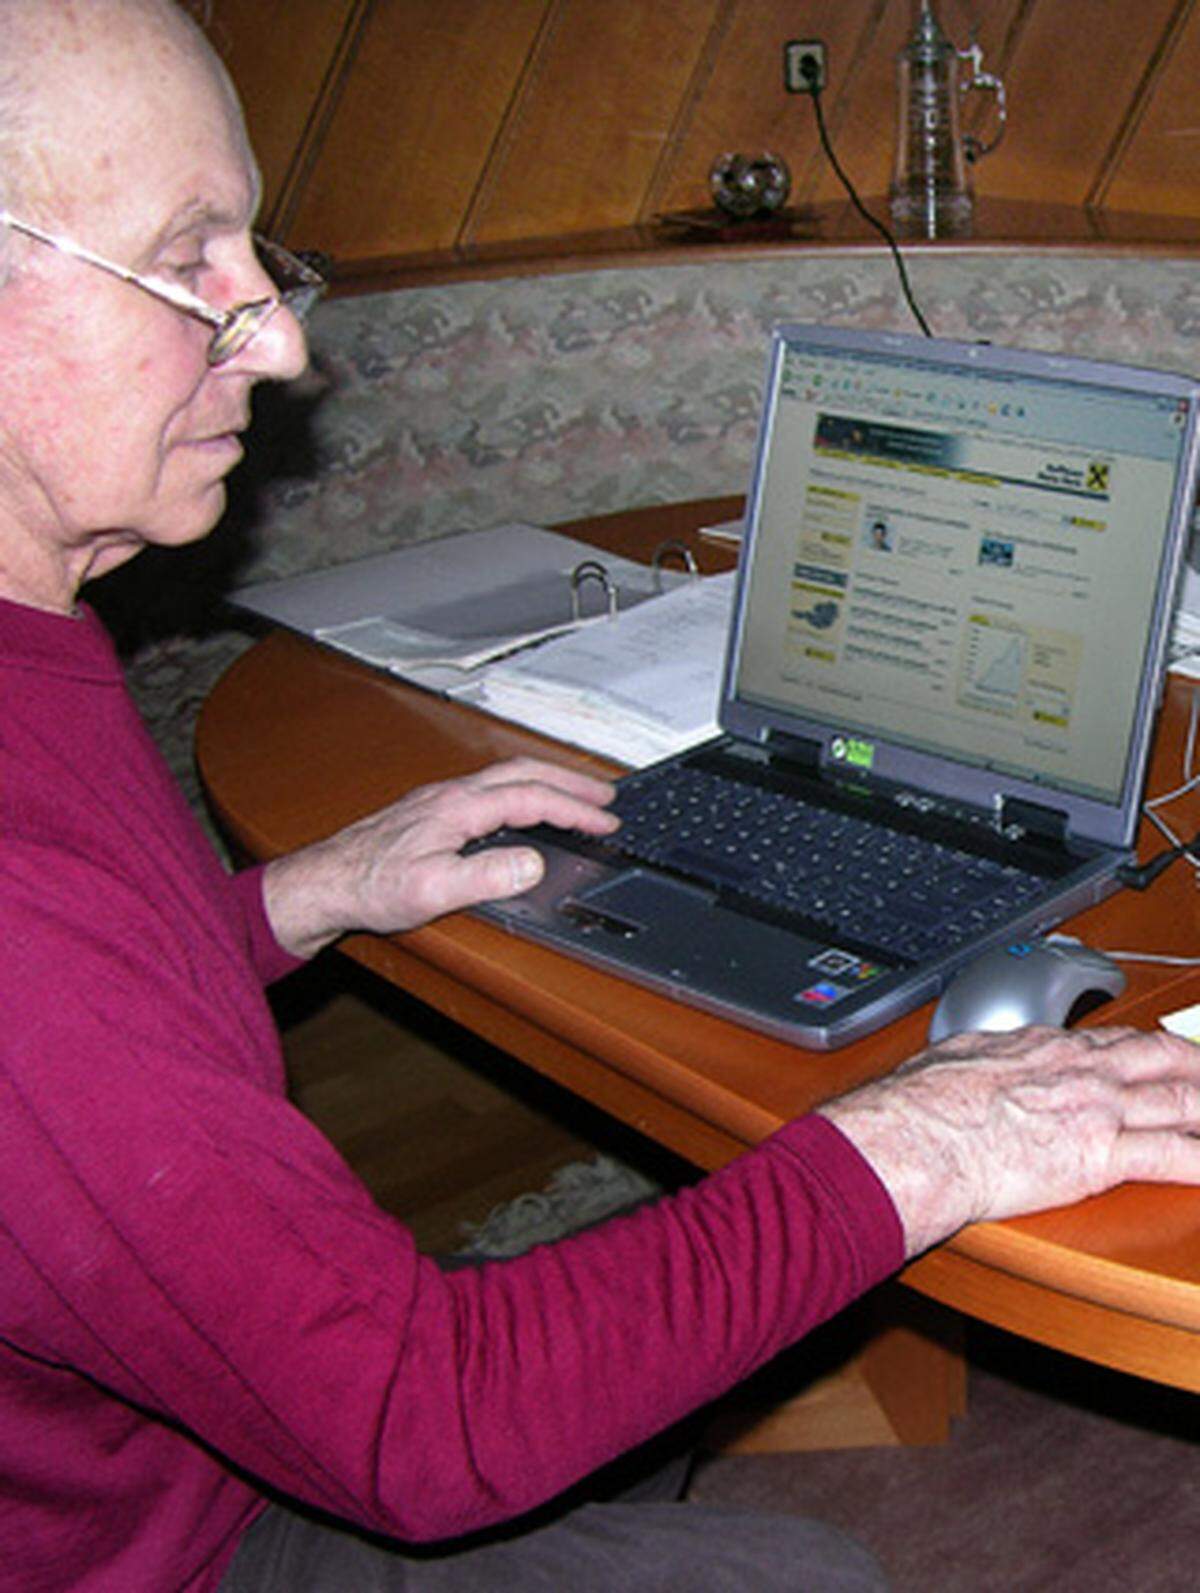 Bereits 44 Prozent der Österreicher zwischen 60 und 69 Jahren nutzen das Internet - Tendenz steigend. Daher haben findige Unternehmen bereits eigene Produkte und Programme für Senioren entwickelt. Aber nicht nur hinsichtlich Computernutzung haben Senioren Bedarf an speziellen Produkten. Hier ein Überblick.